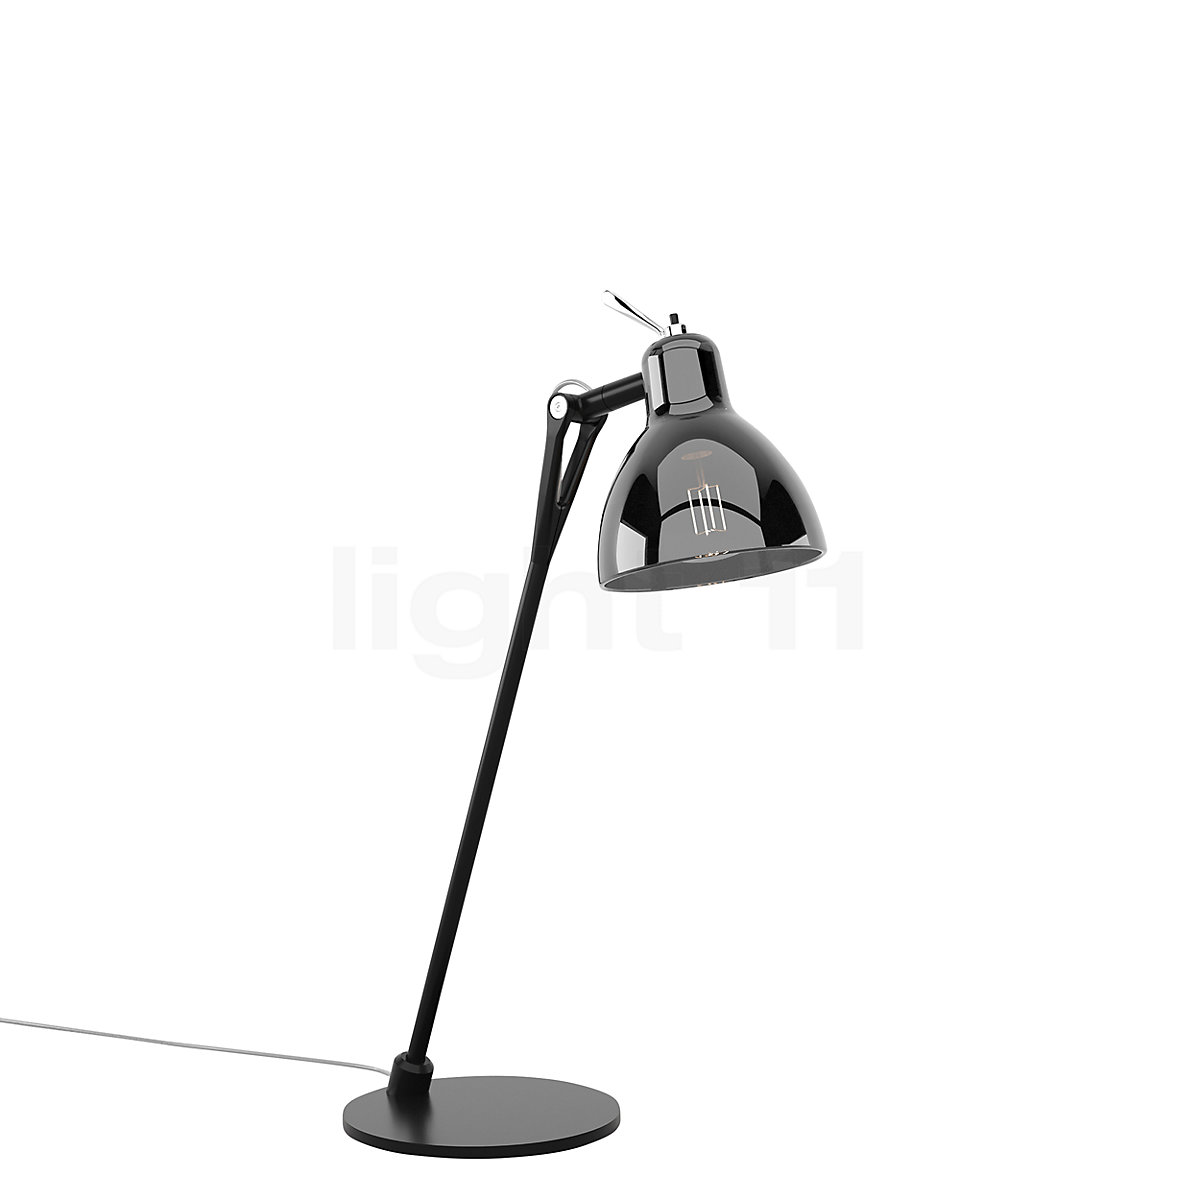 Rotaliana Glam Table Lamp at light11.eu